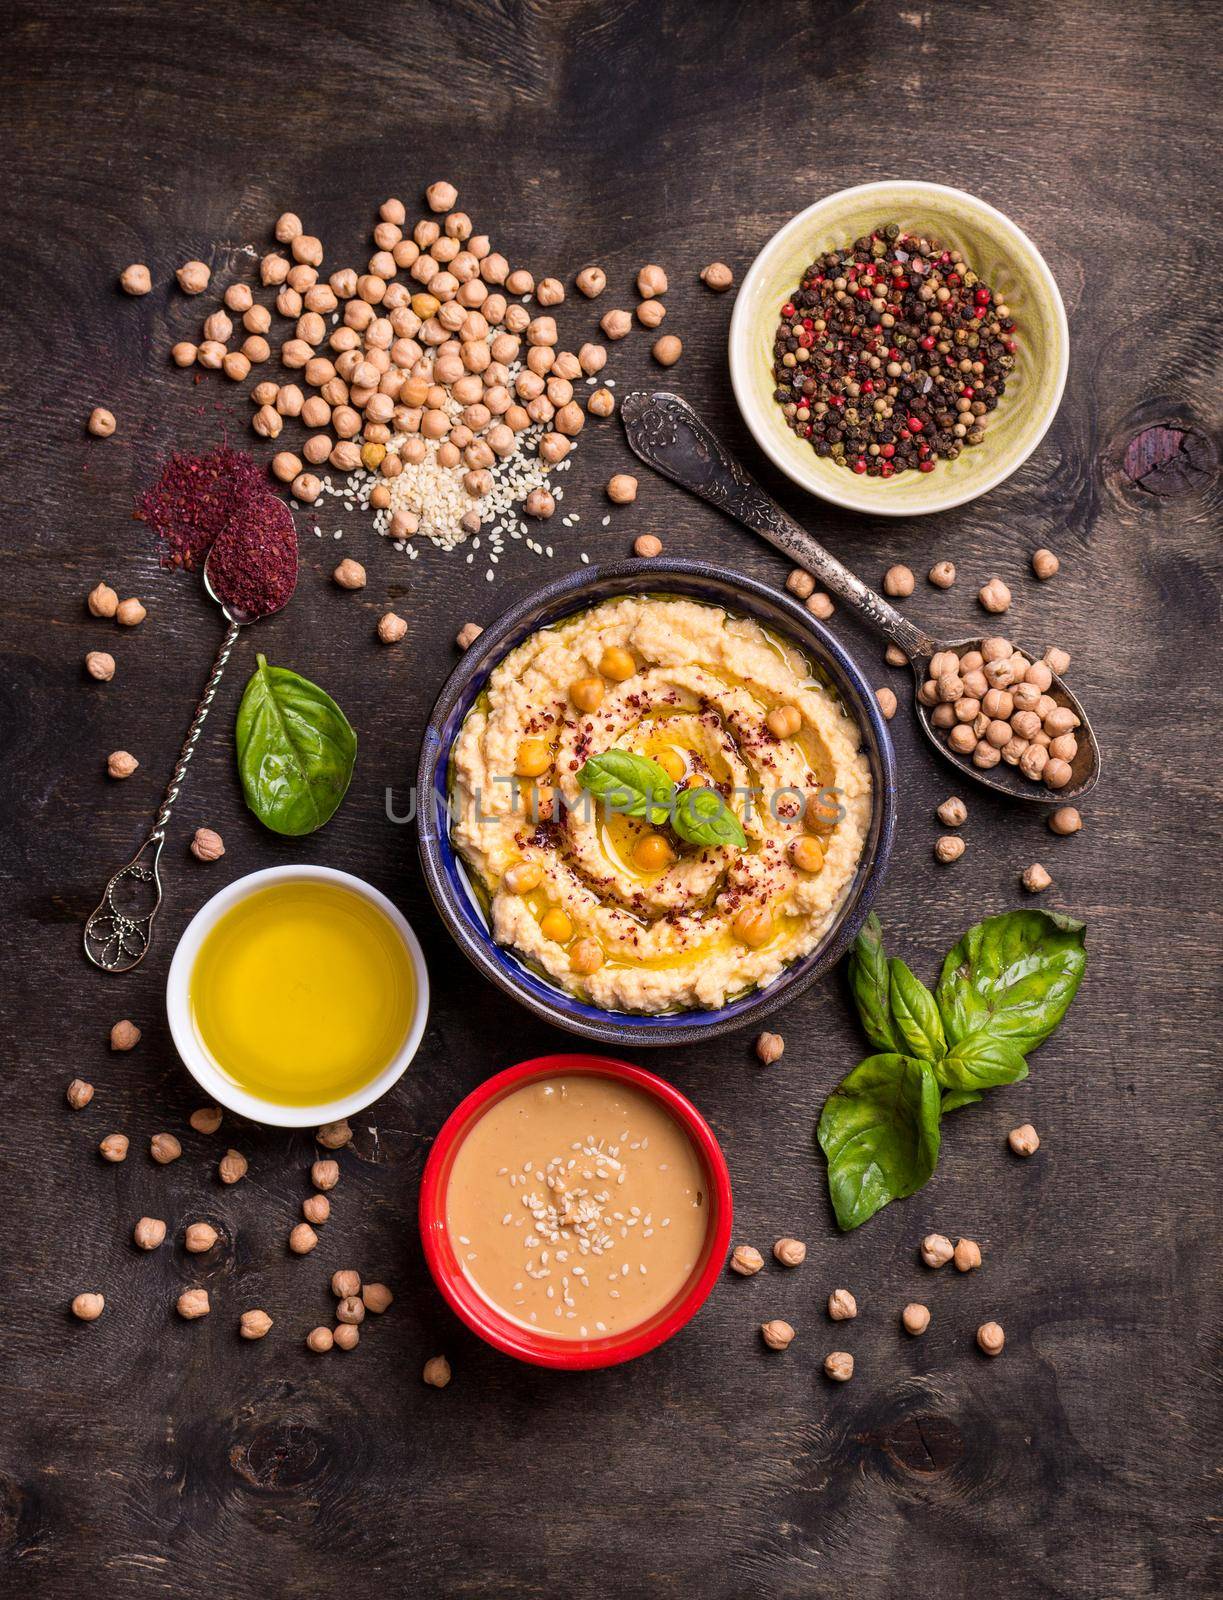 Hummus ingredients by its_al_dente